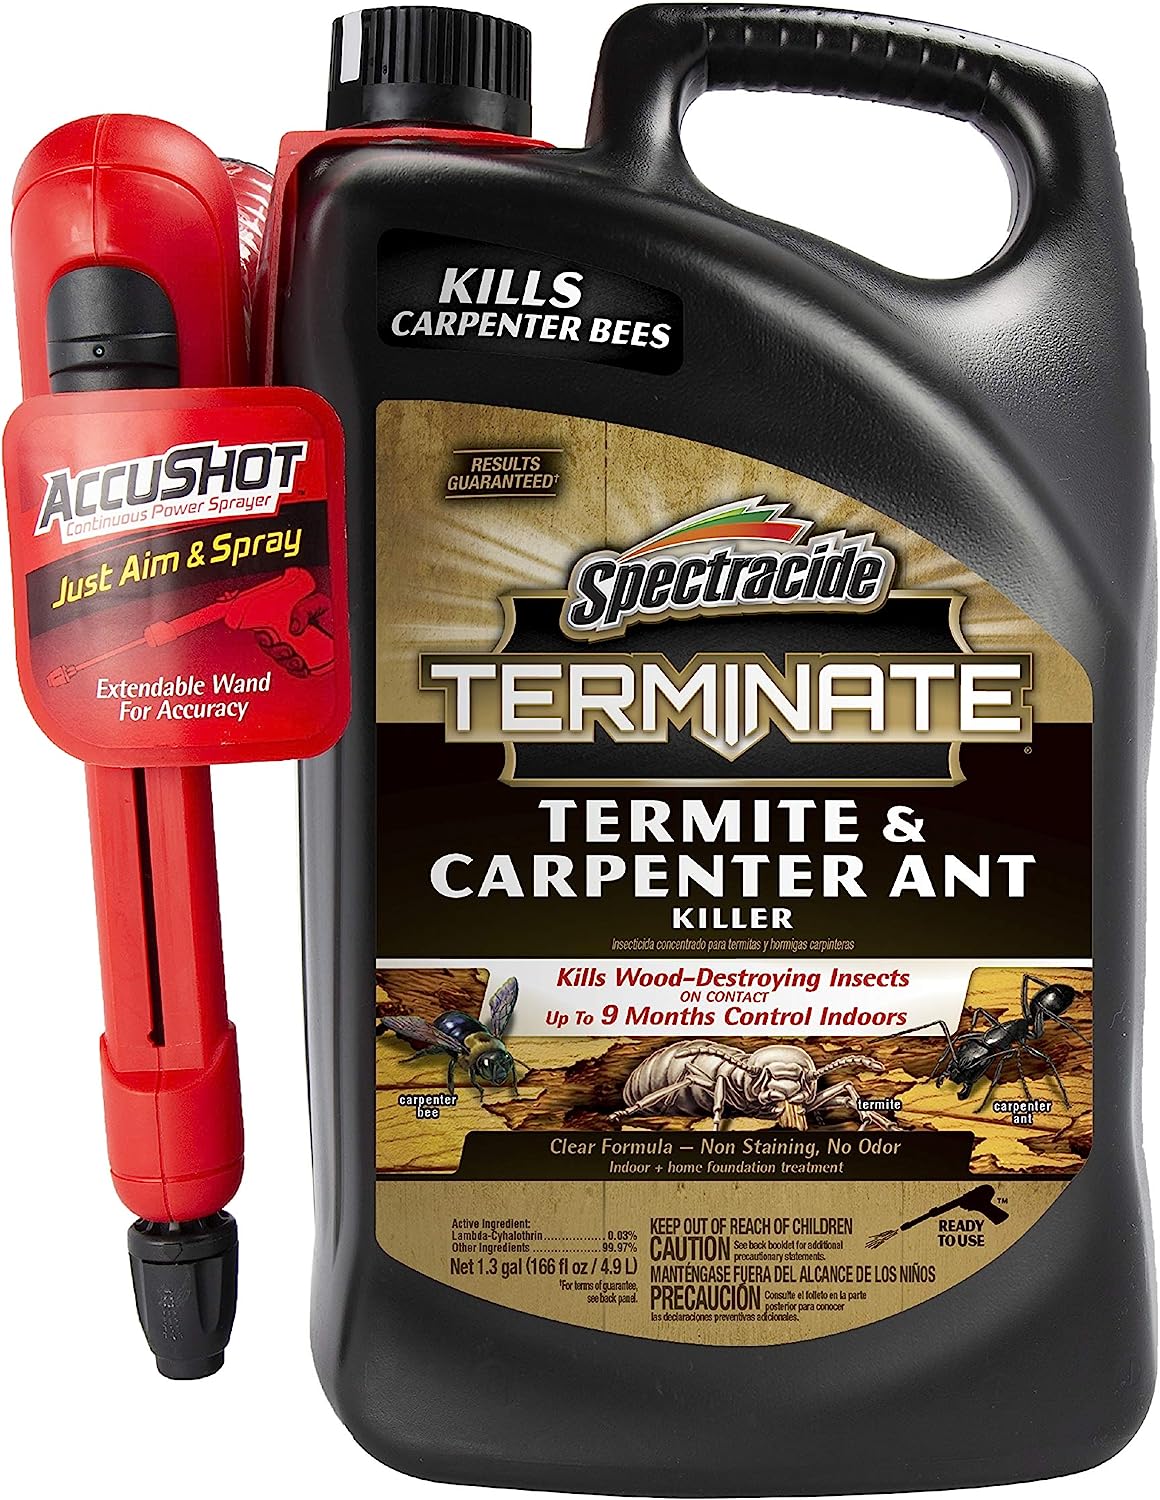 carpenter ant killer review